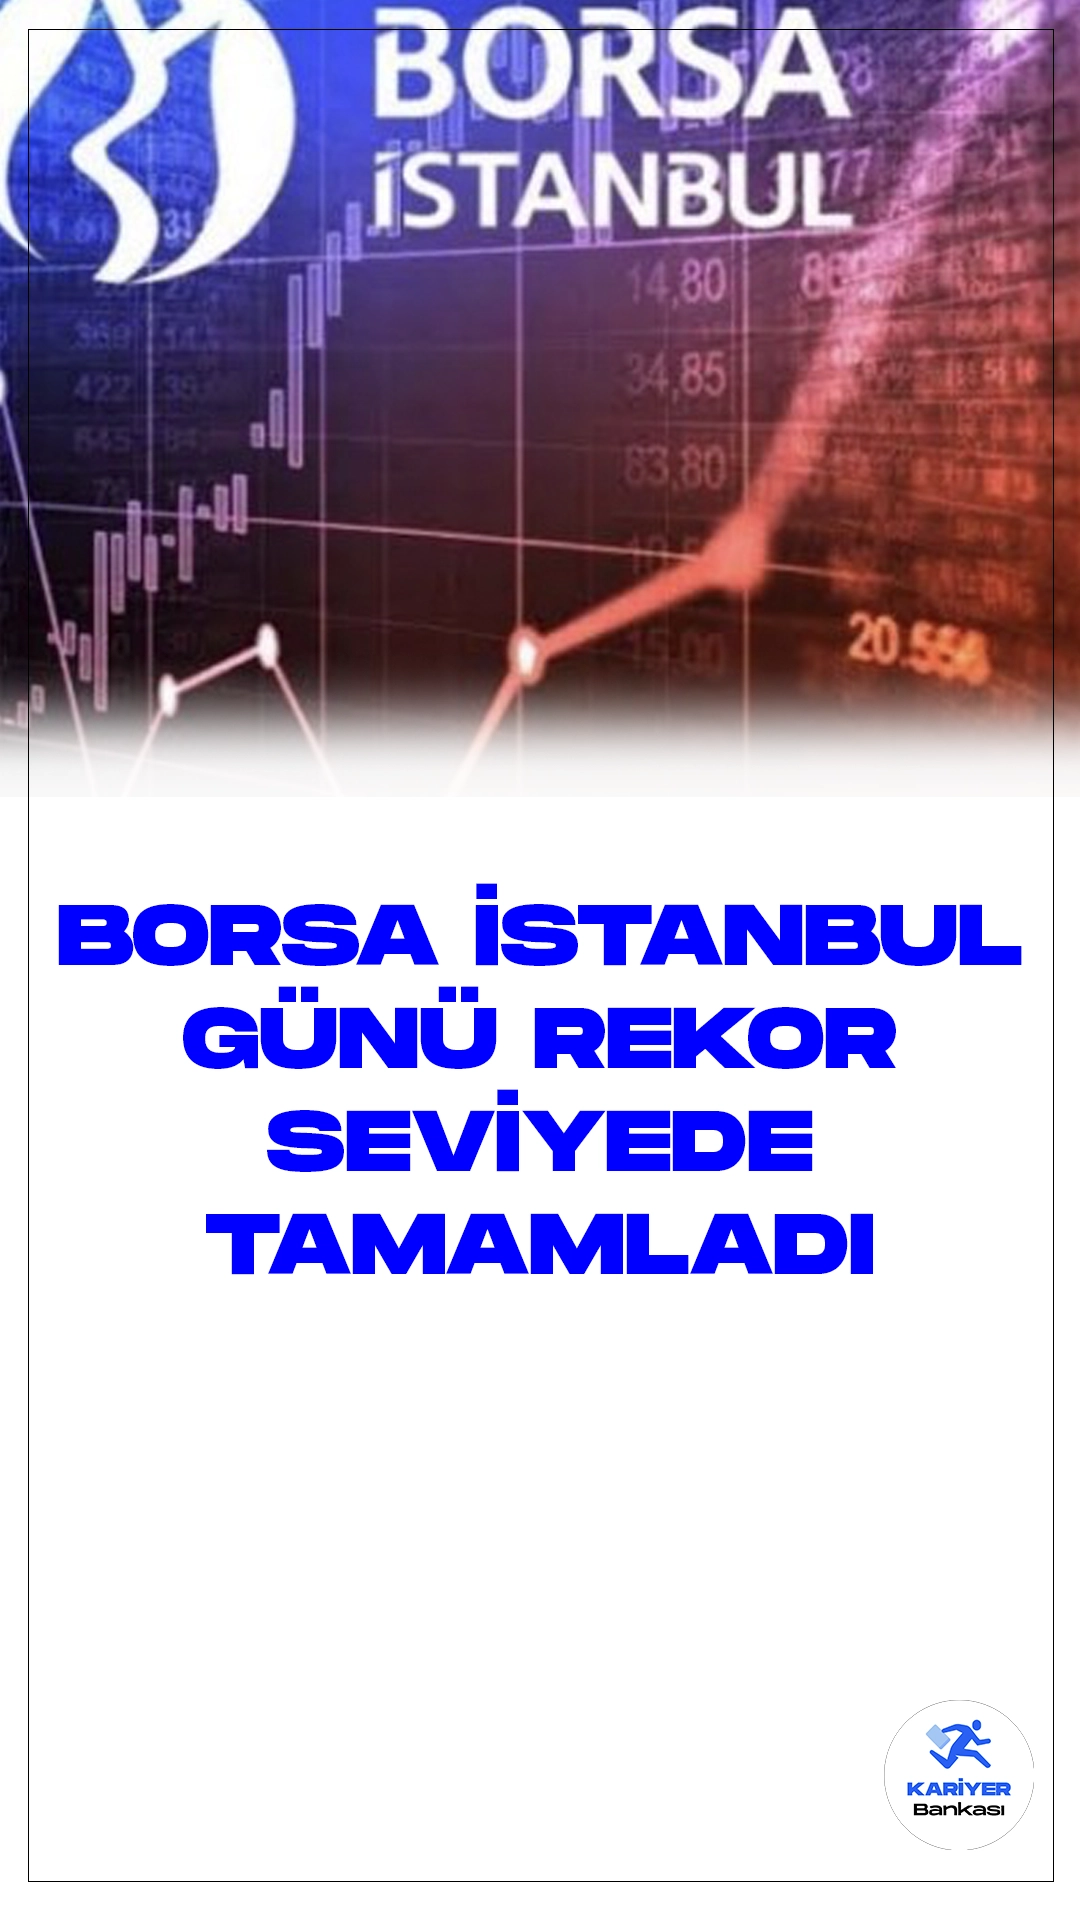 Borsa Günü Rekor Seviyede Tamamlandı.Borsa İstanbul'da BIST 100 endeksi, günü rekor seviyede tamamlayarak yüzde 1,07'lik bir değer kazancı elde etti ve 9.045,97 puandan kapandı. Bu değer, önceki kapanışa göre 96,18 puanlık bir artışı temsil ediyor. Toplam işlem hacmi ise 120,2 milyar lira olarak gerçekleşti.